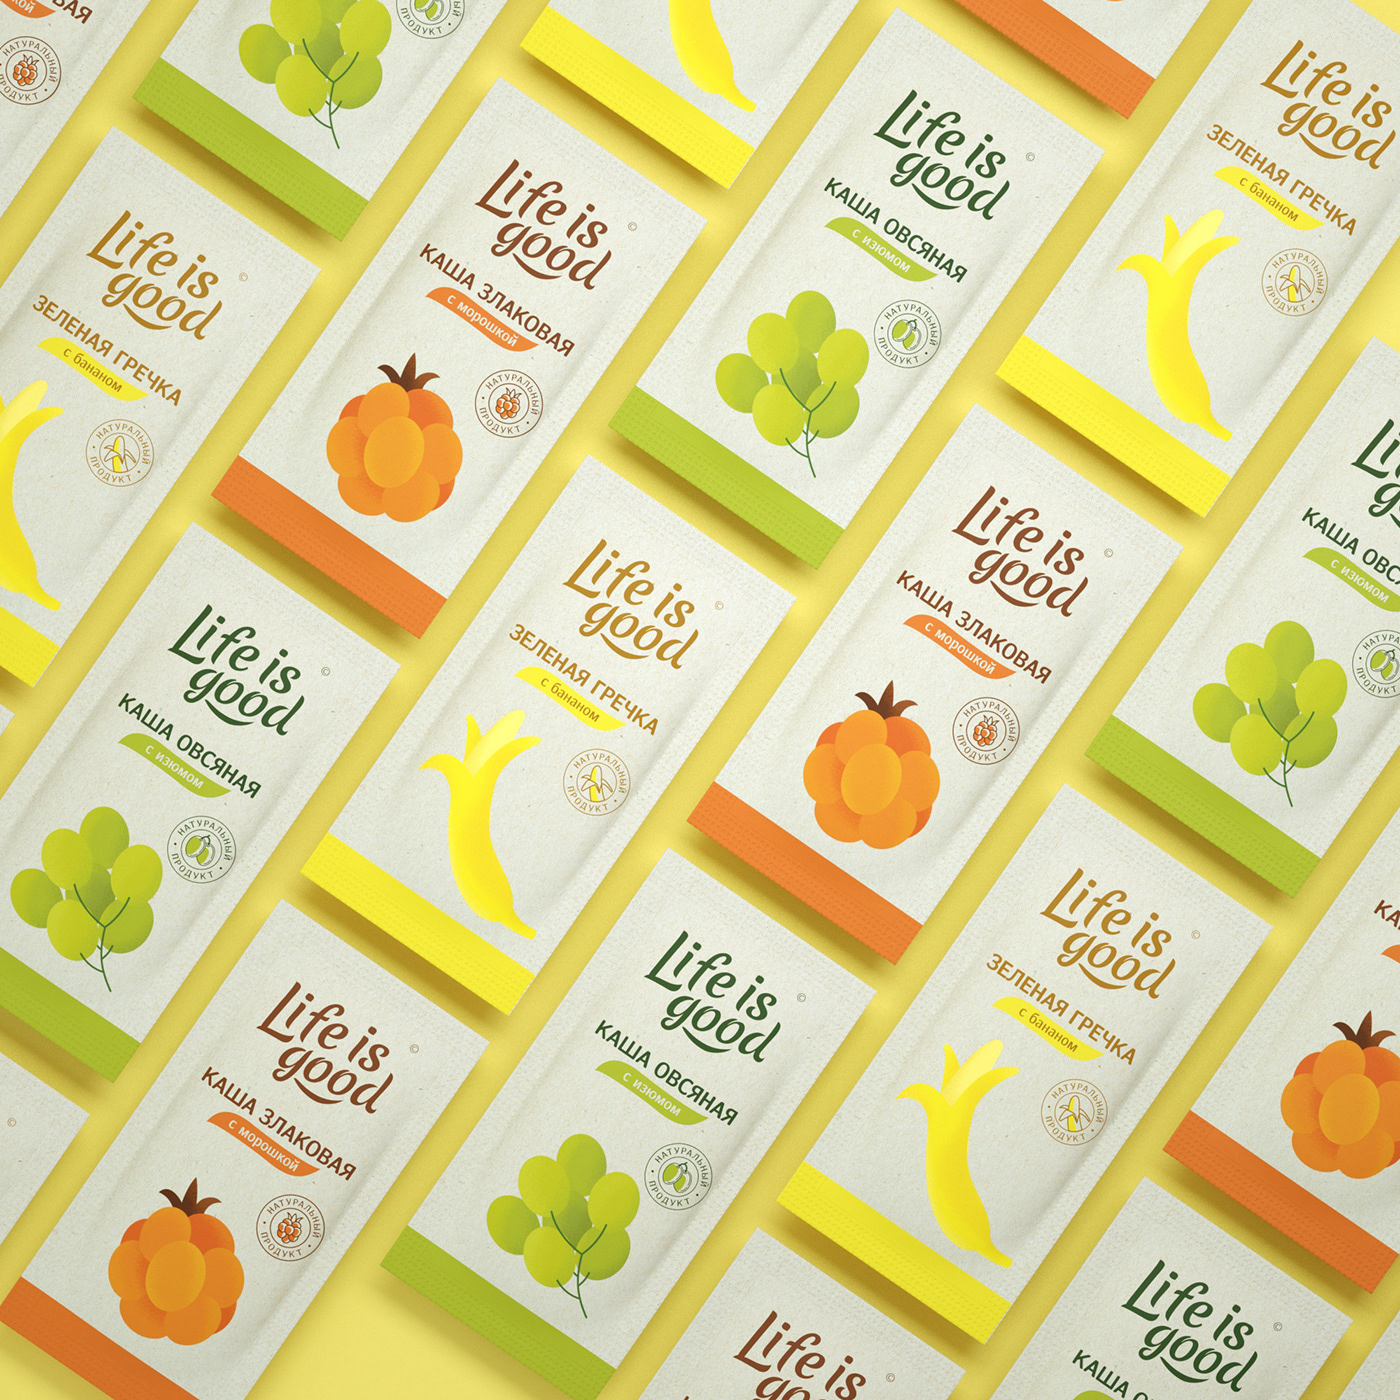 brand identity branding  healthy food Logotype Packaging дизайн упаковки дизайн этикетки здоровое питание иллюстрация правильное питание